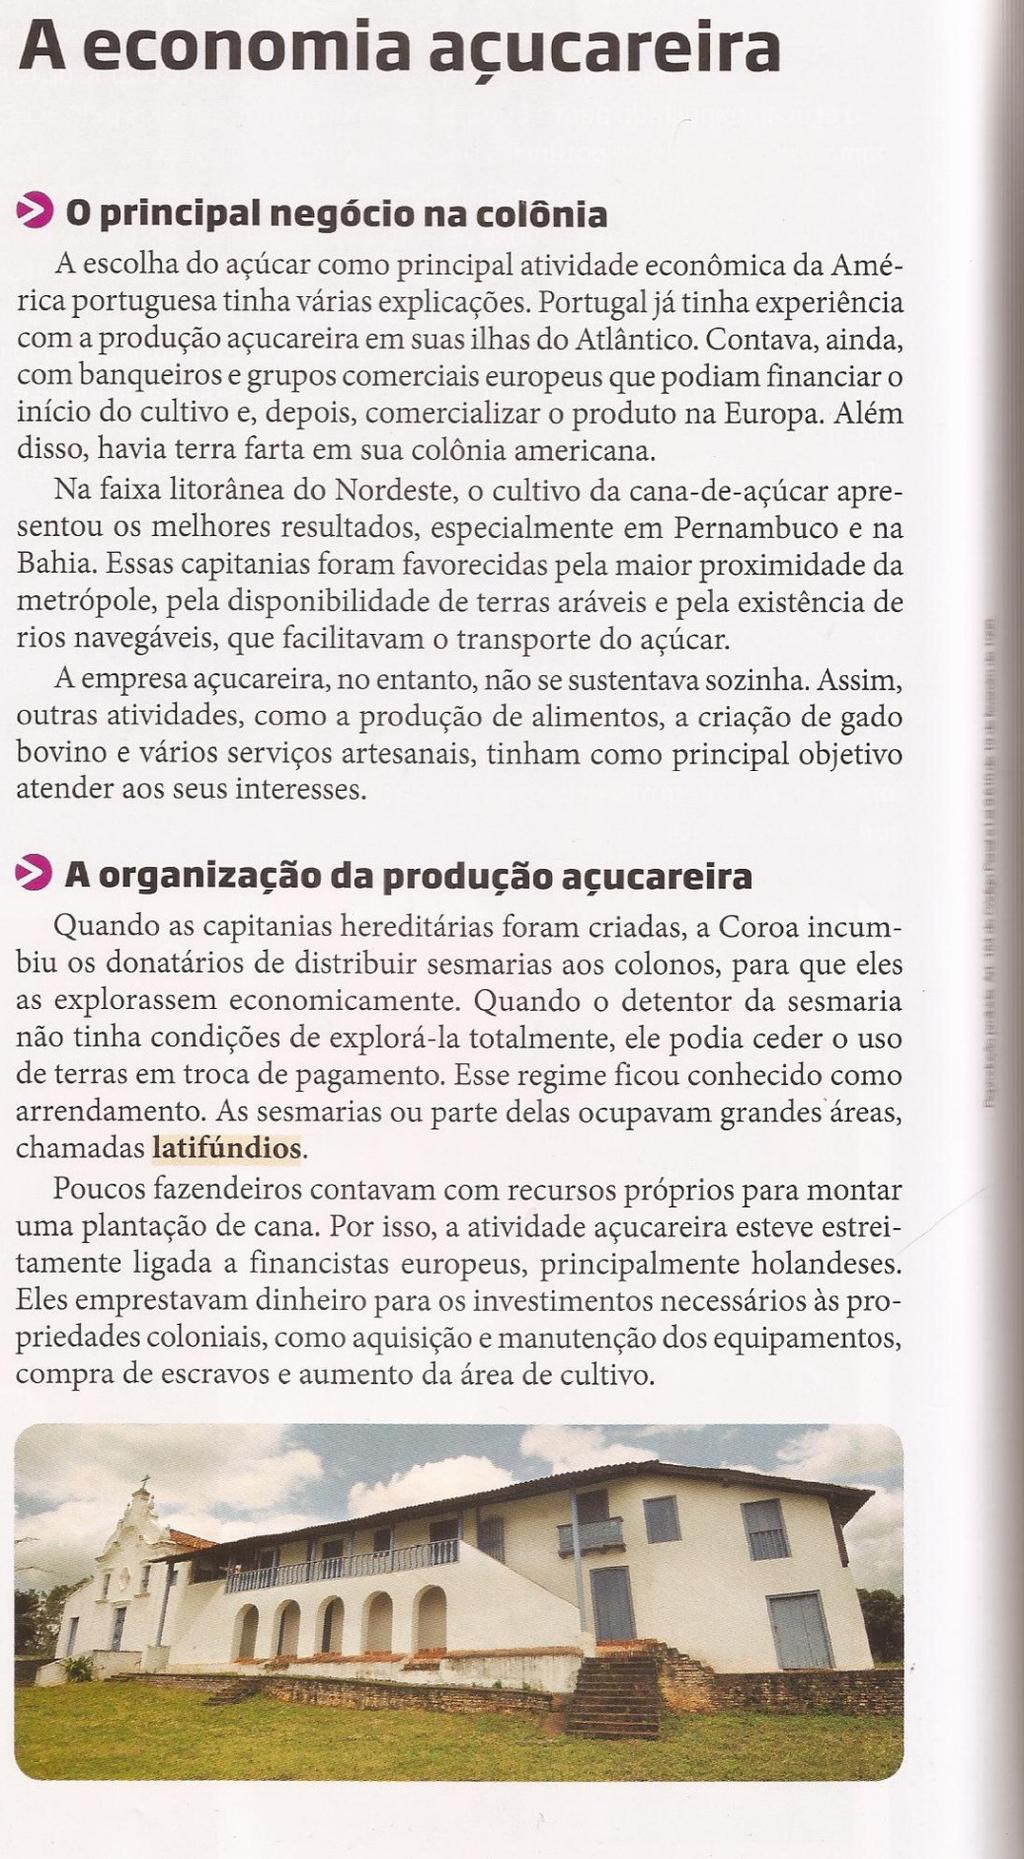 QUEST 11 DEFINA capitanias hereditárias, destacando as razões para sua implantação e as causas de seu fracasso. Caa,de,a"-car Projeto Araribá, 7º ano. São Paulo: Moderna, 2010. p. 129.